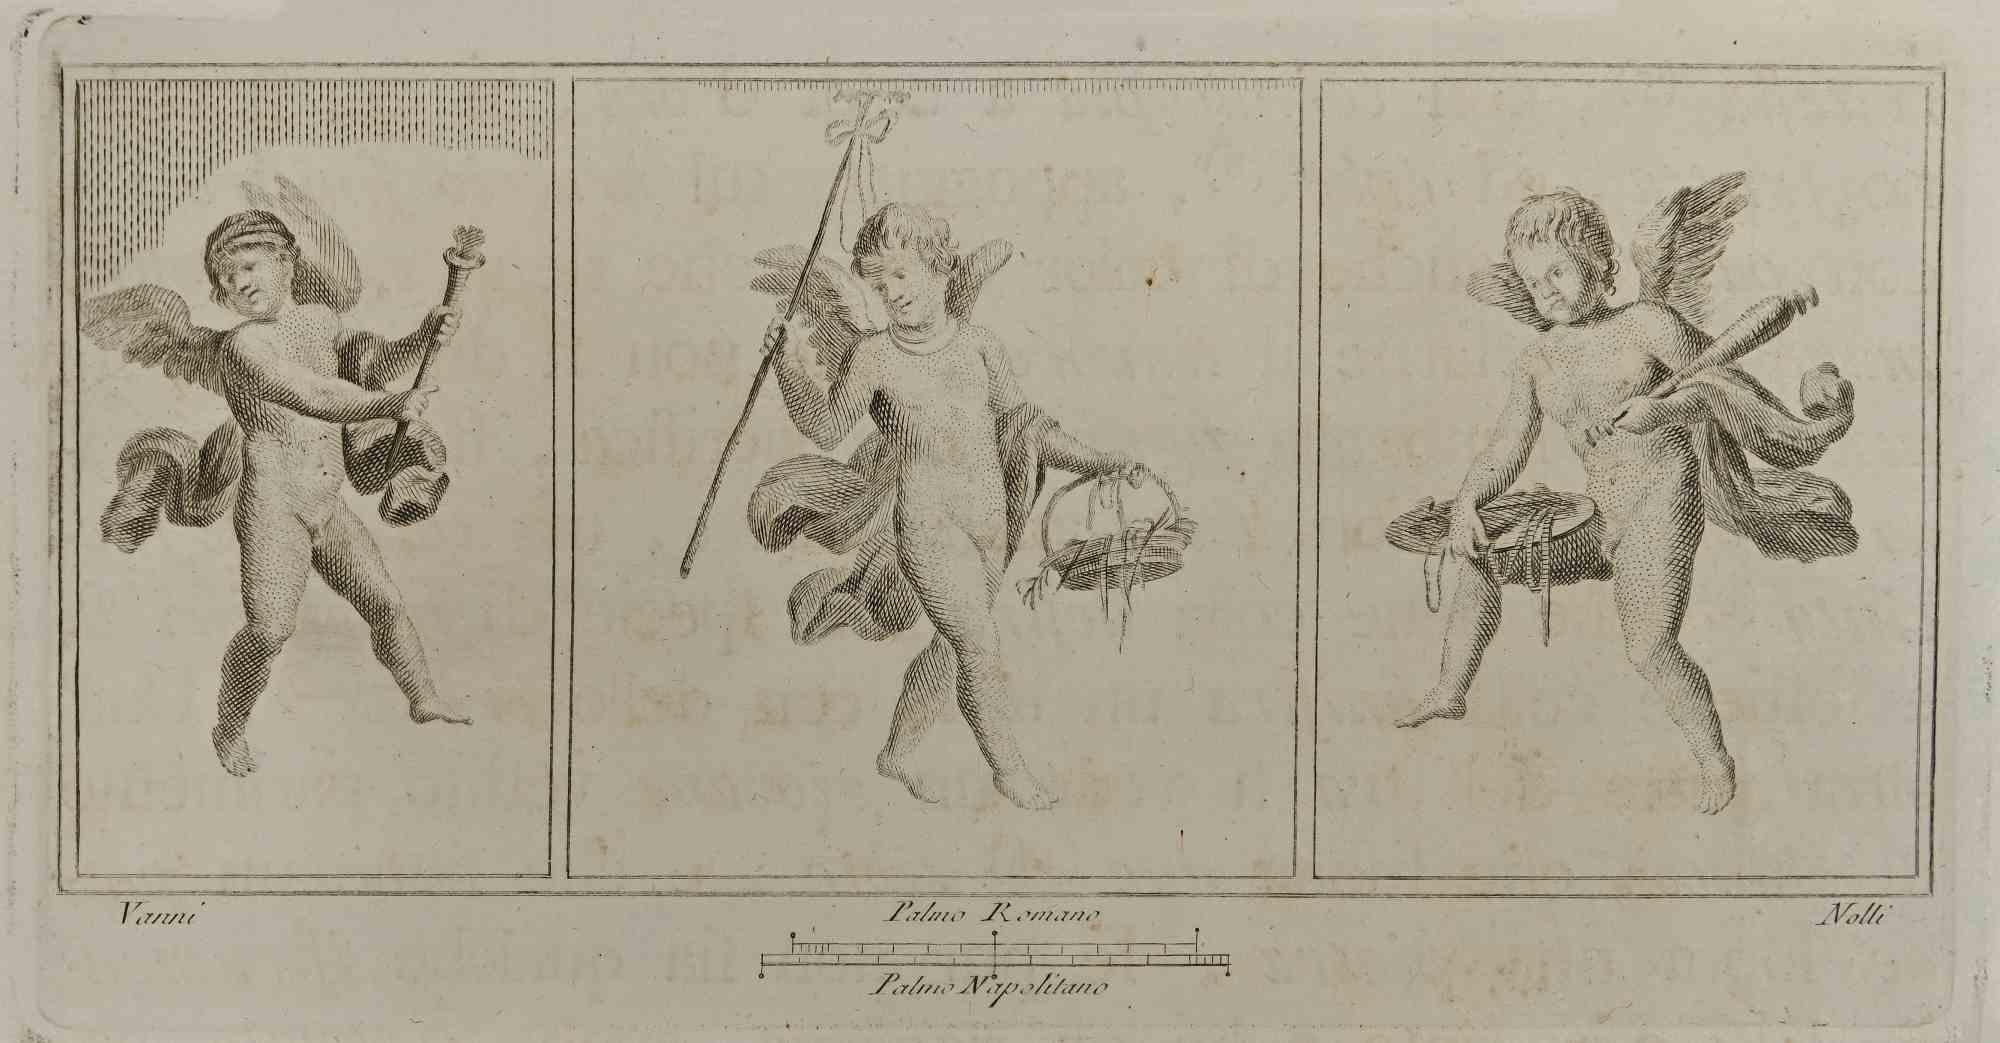 Amor in drei Rahmen aus den "Antiquitäten von Herculaneum" ist eine Radierung auf Papier von Carlo Nolli aus dem 18. Jahrhundert.

Signiert auf der Platte.

Gute Bedingungen.

Die Radierung gehört zu der Druckserie "Antiquities of Herculaneum